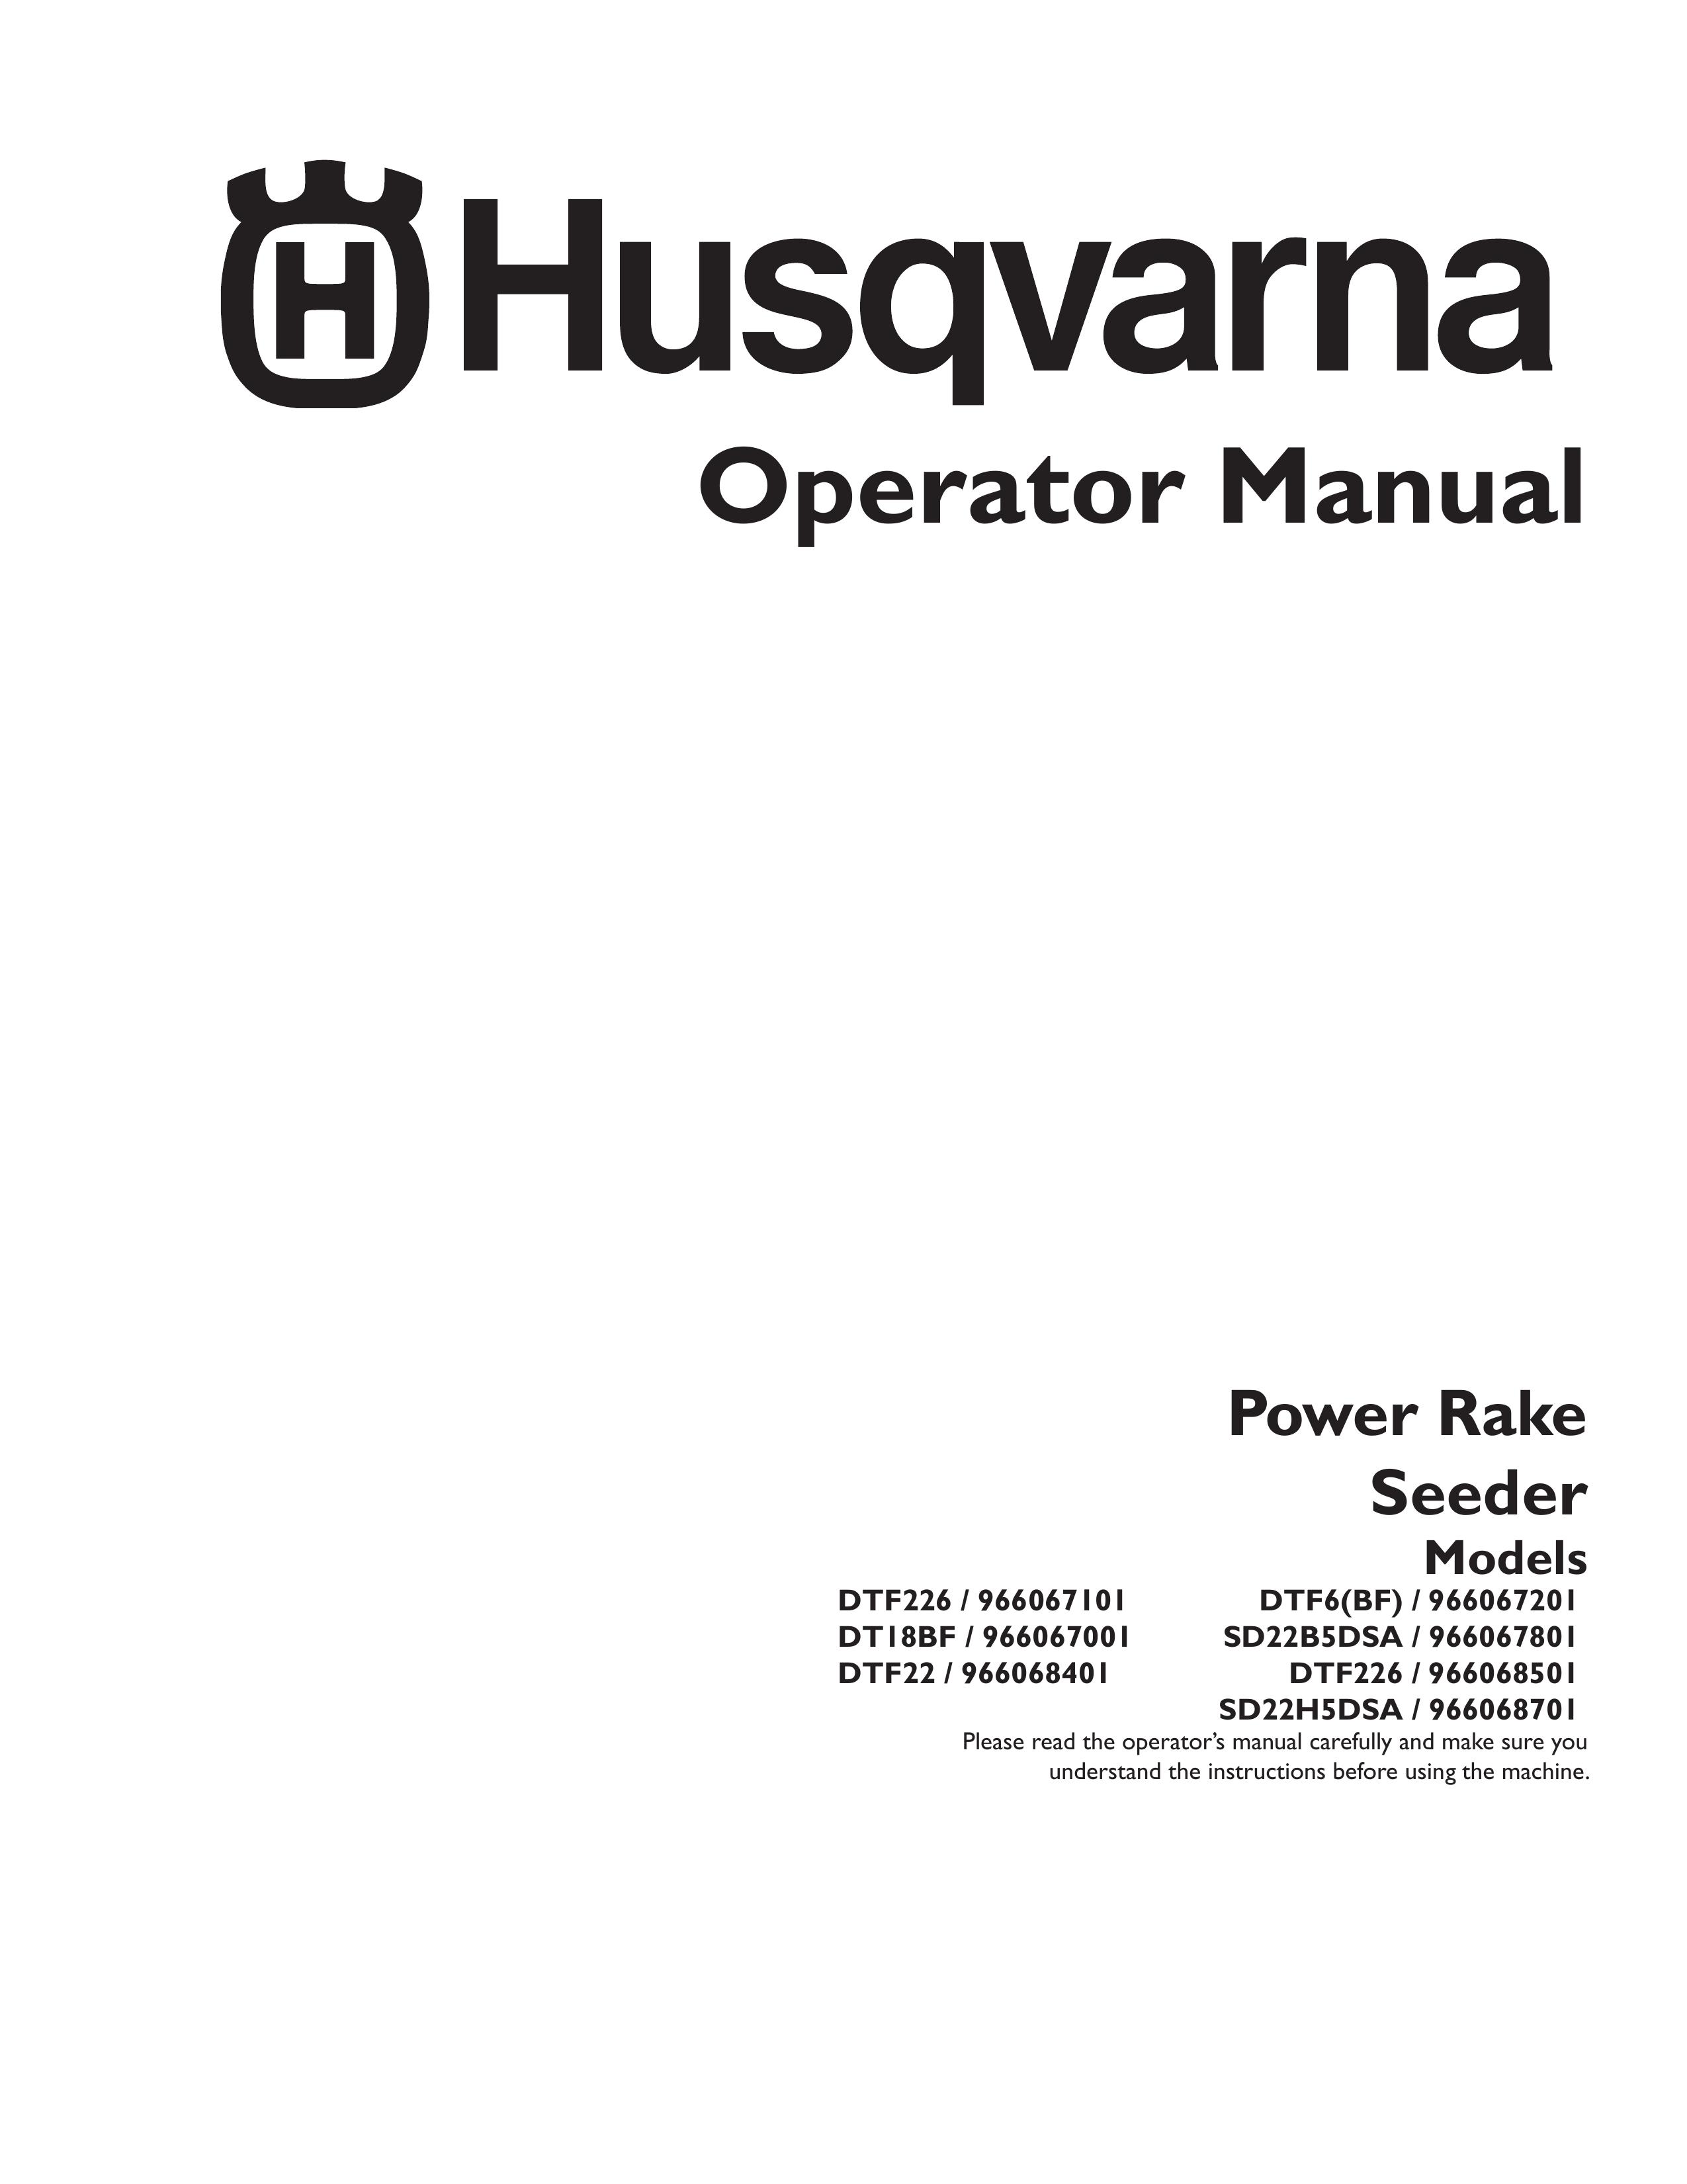 Husqvarna 966067201 Spreader User Manual